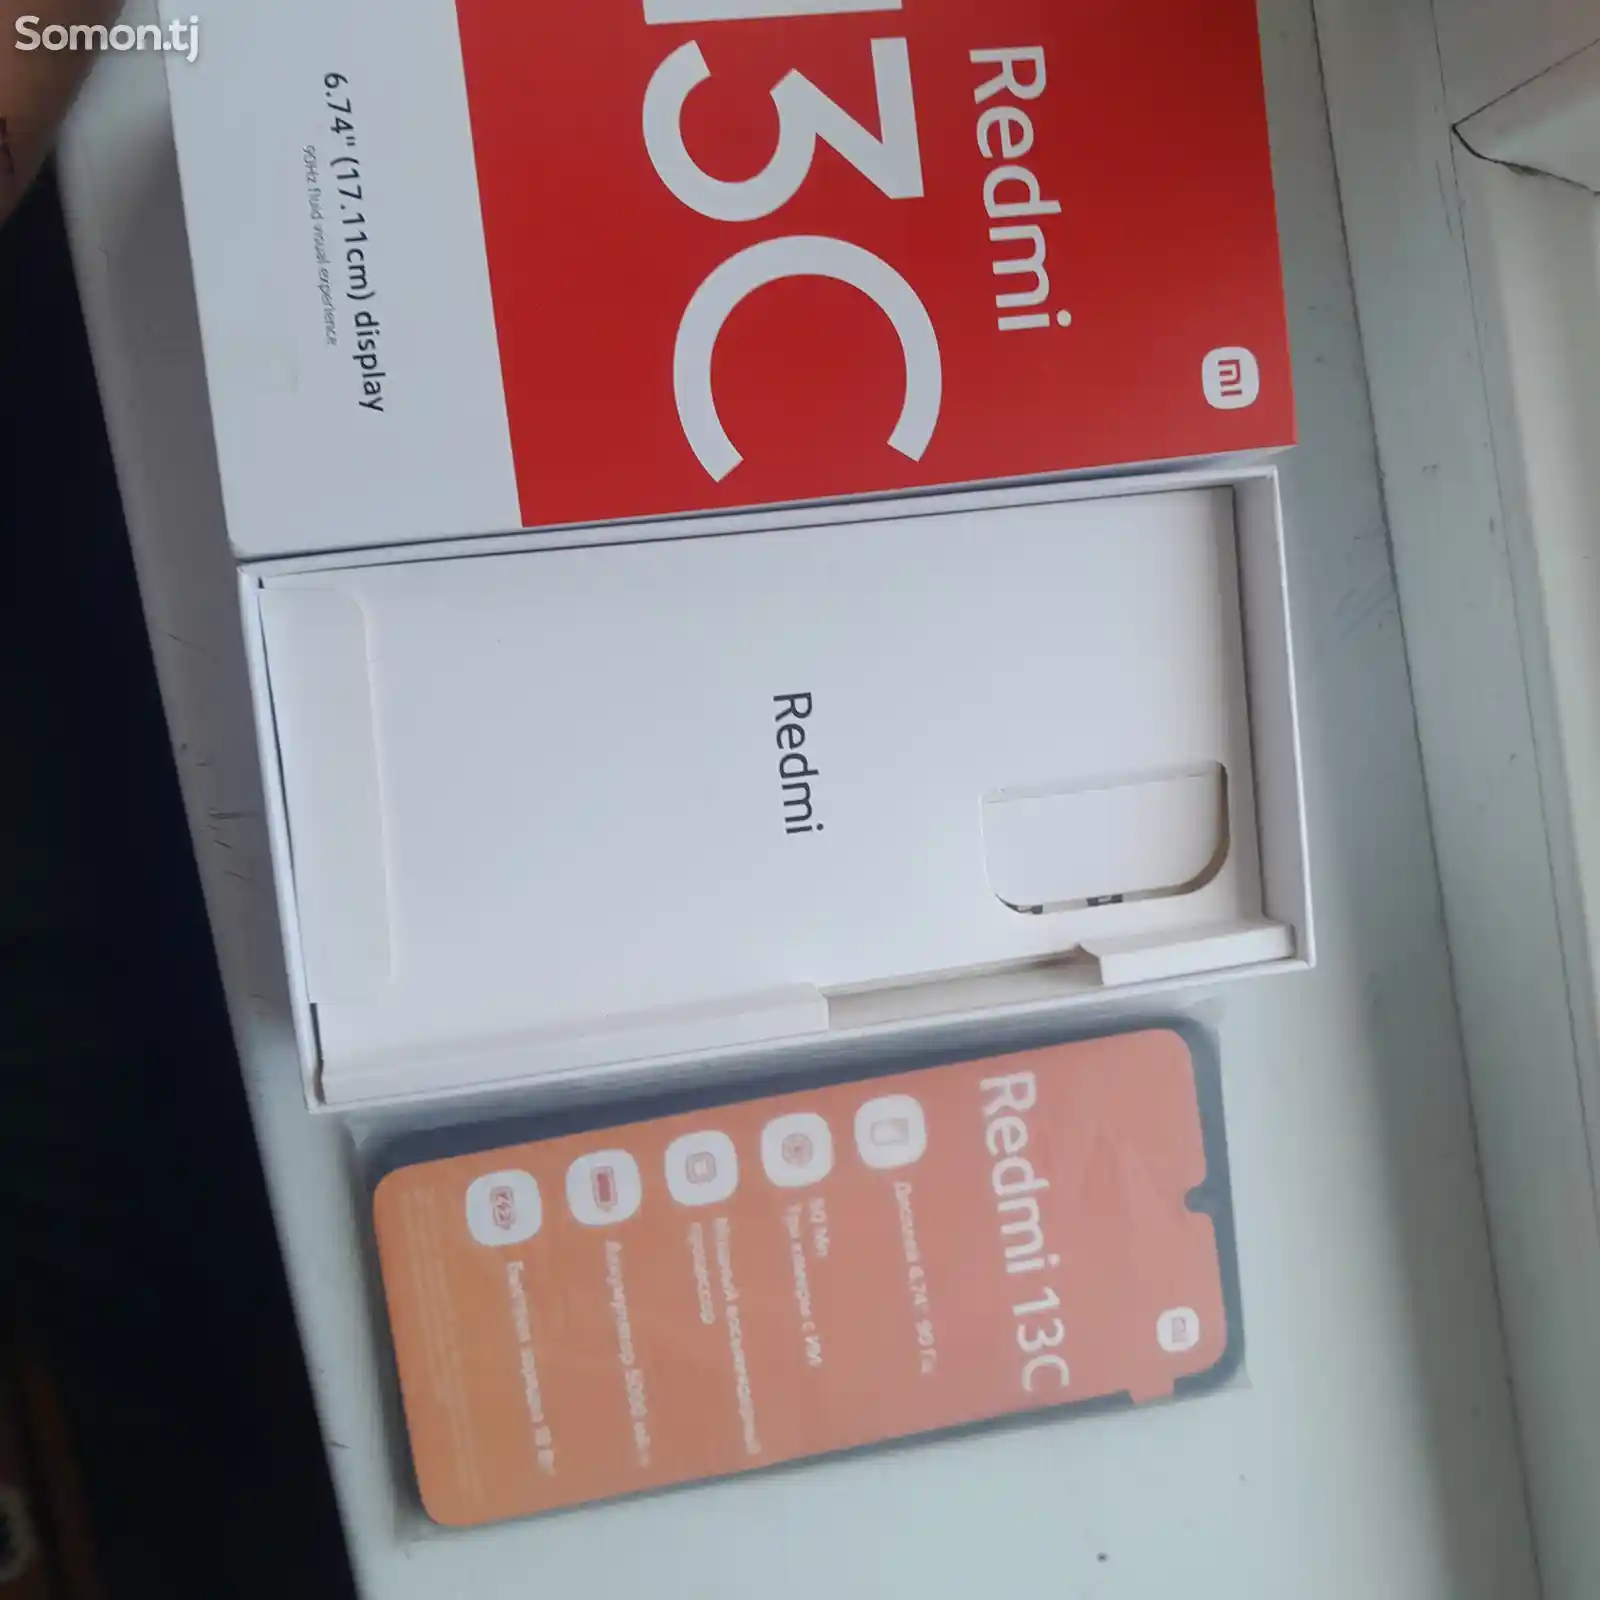 Xiaomi Redmi 13c-2